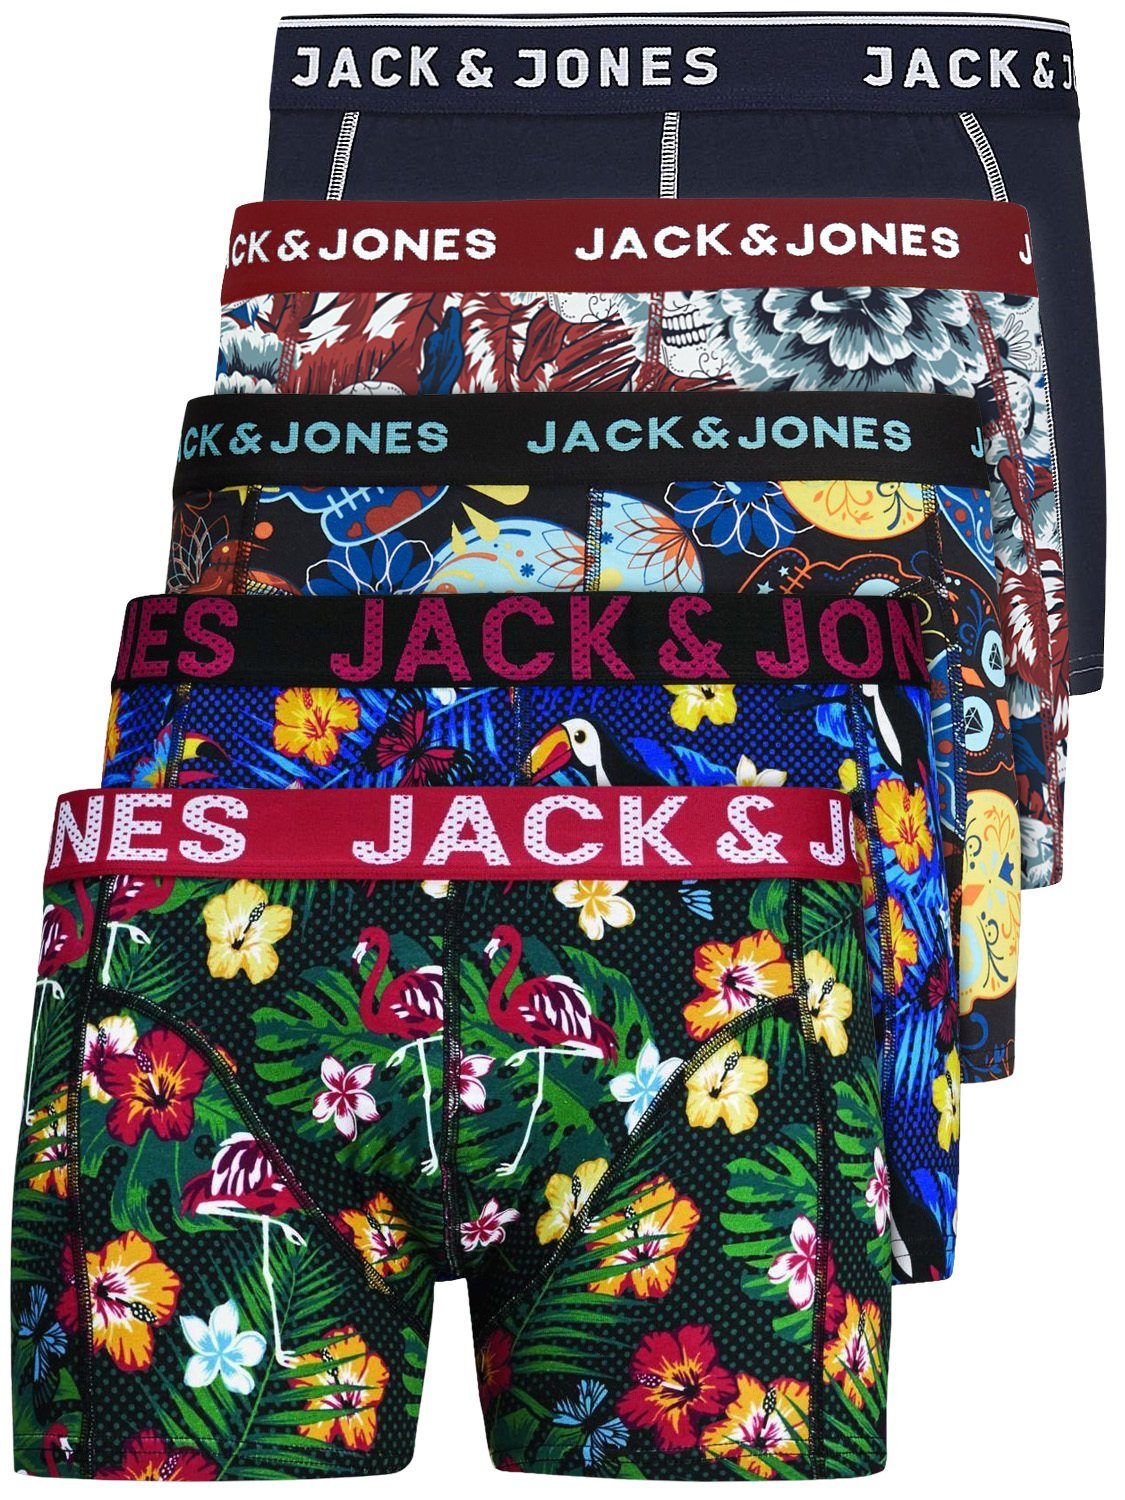 Jack & Jones Boxershorts Jacvel (5-St., 5er Pack) gute Passform durch elastische Baumwollqualität Detail Mix 1